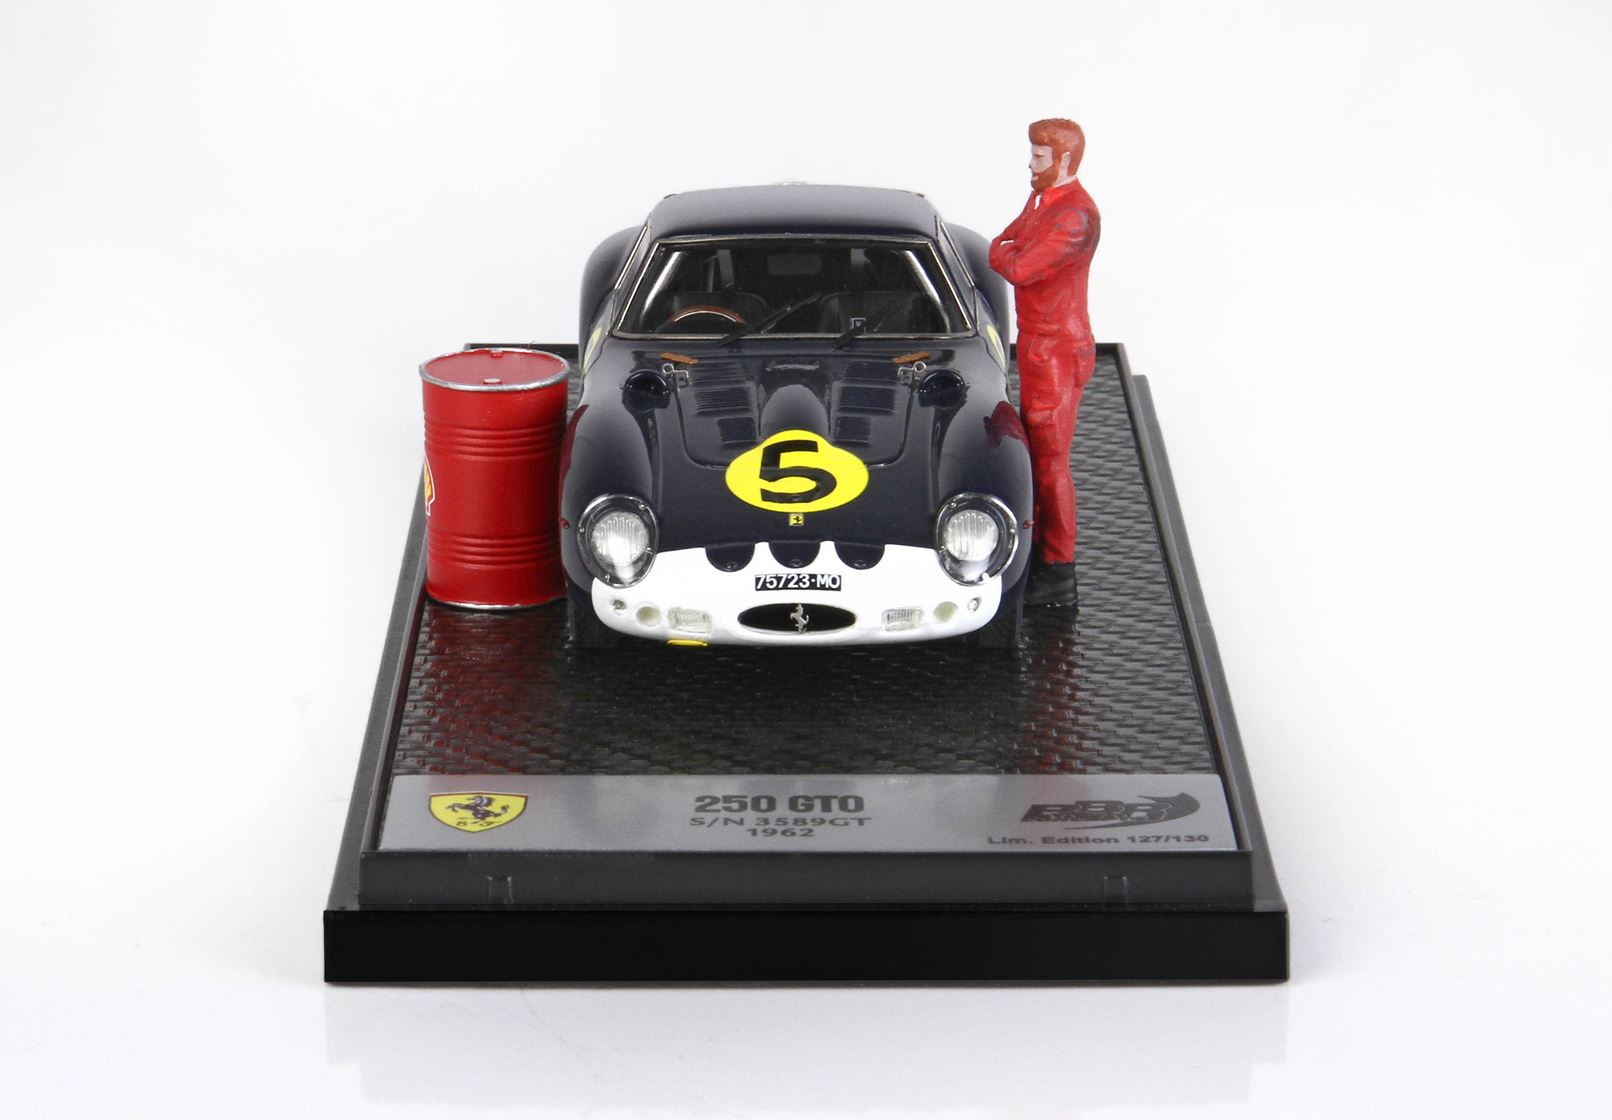 BBR 1:43 scale Ferrari 250 GTO diorama